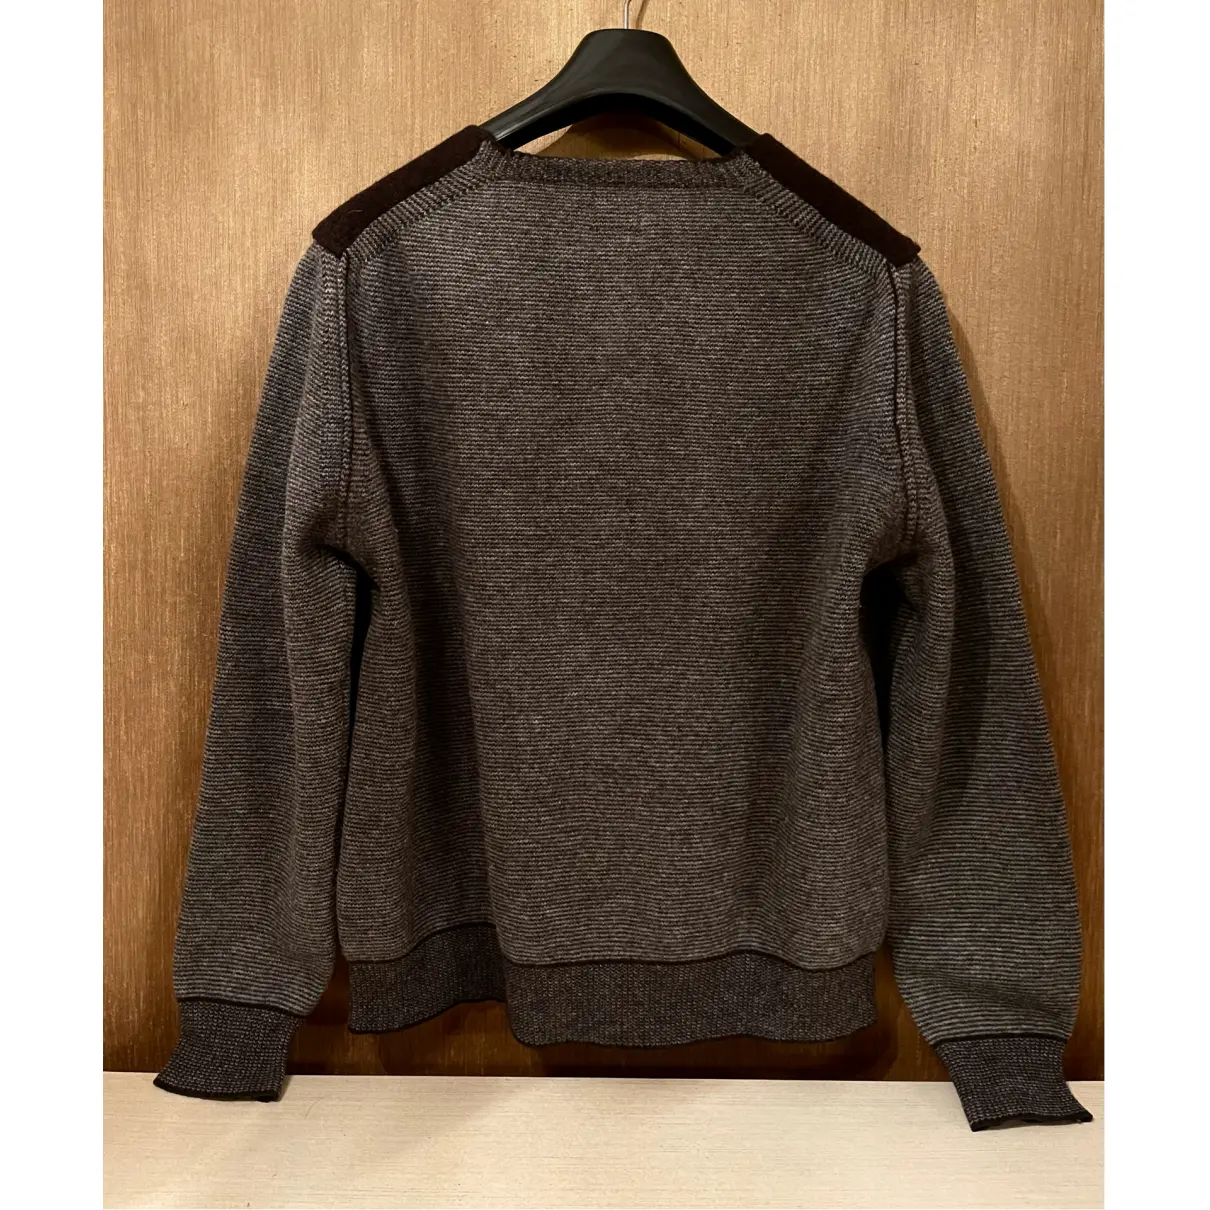 Buy C.P. Company Wool knitwear & sweatshirt online